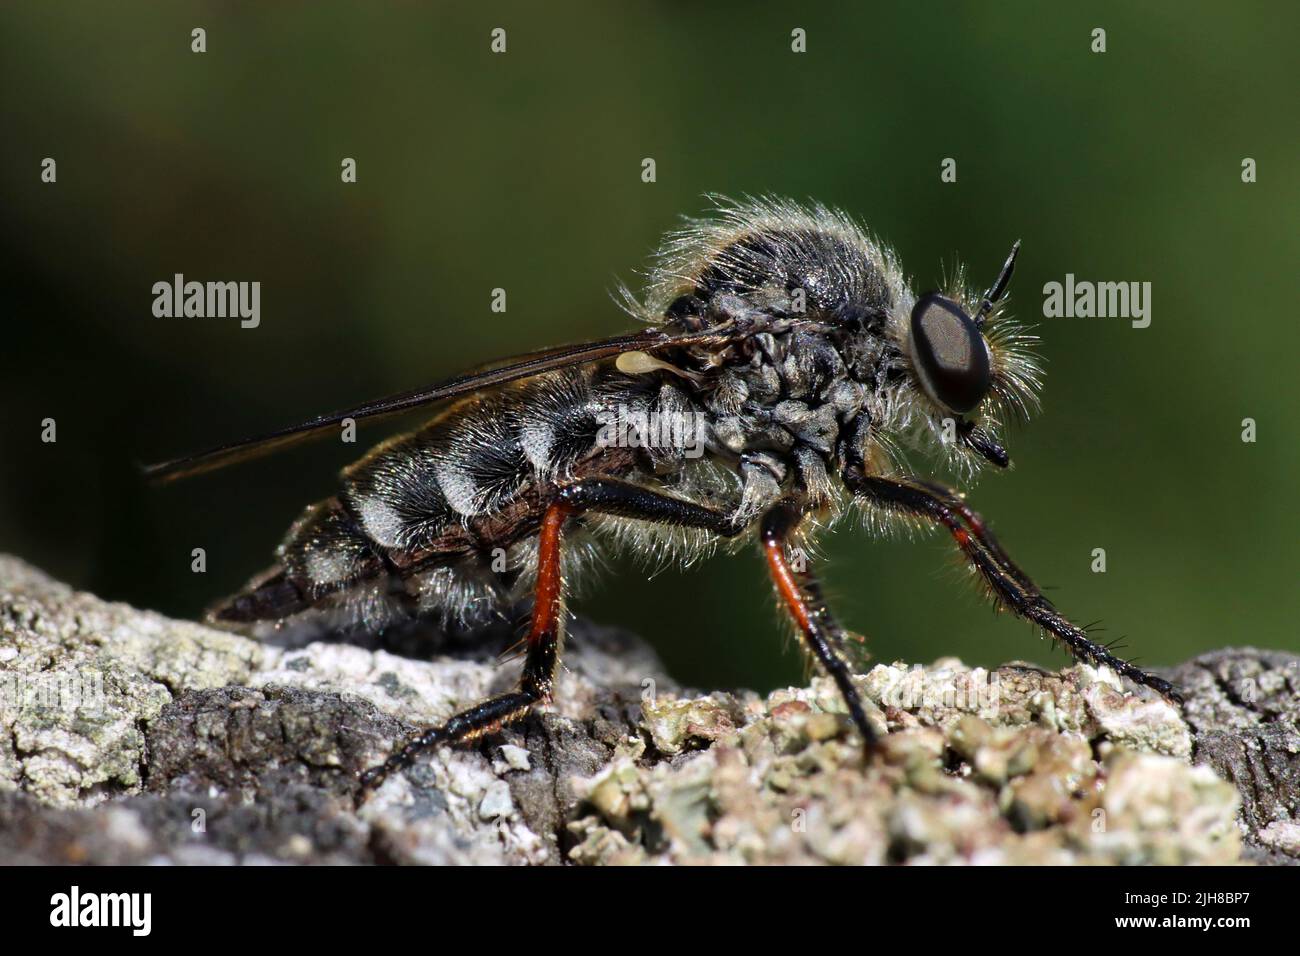 Mosca Robberfly de pata delgada - Leptarthrus brevirostris Foto de stock